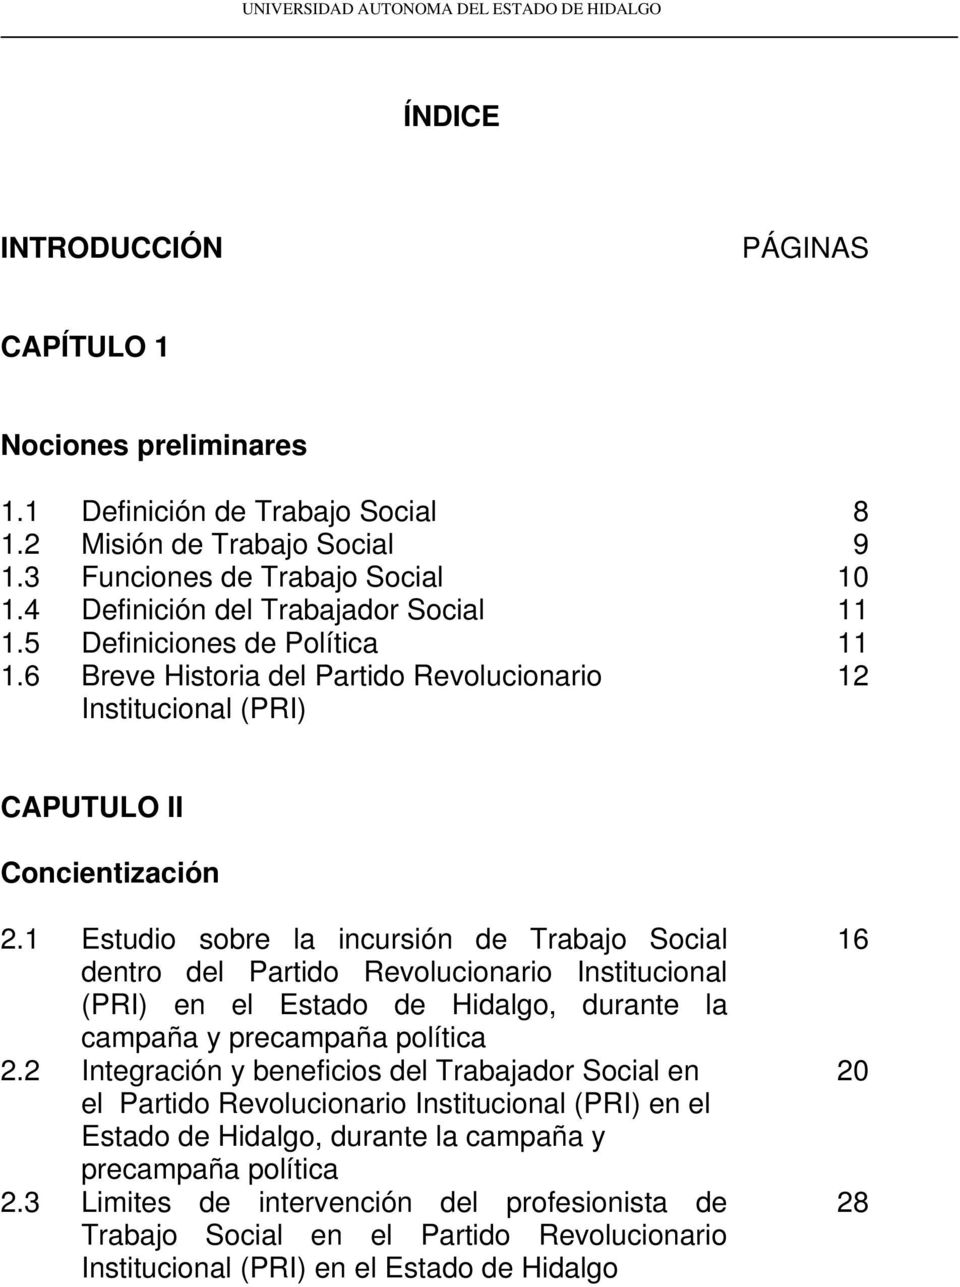 II Concientización 2.1 Estudio sobre la incursión de Trabajo Social dentro del Partido Revolucionario Institucional (PRI) en el Estado de Hidalgo, durante la campaña y precampaña política 2.